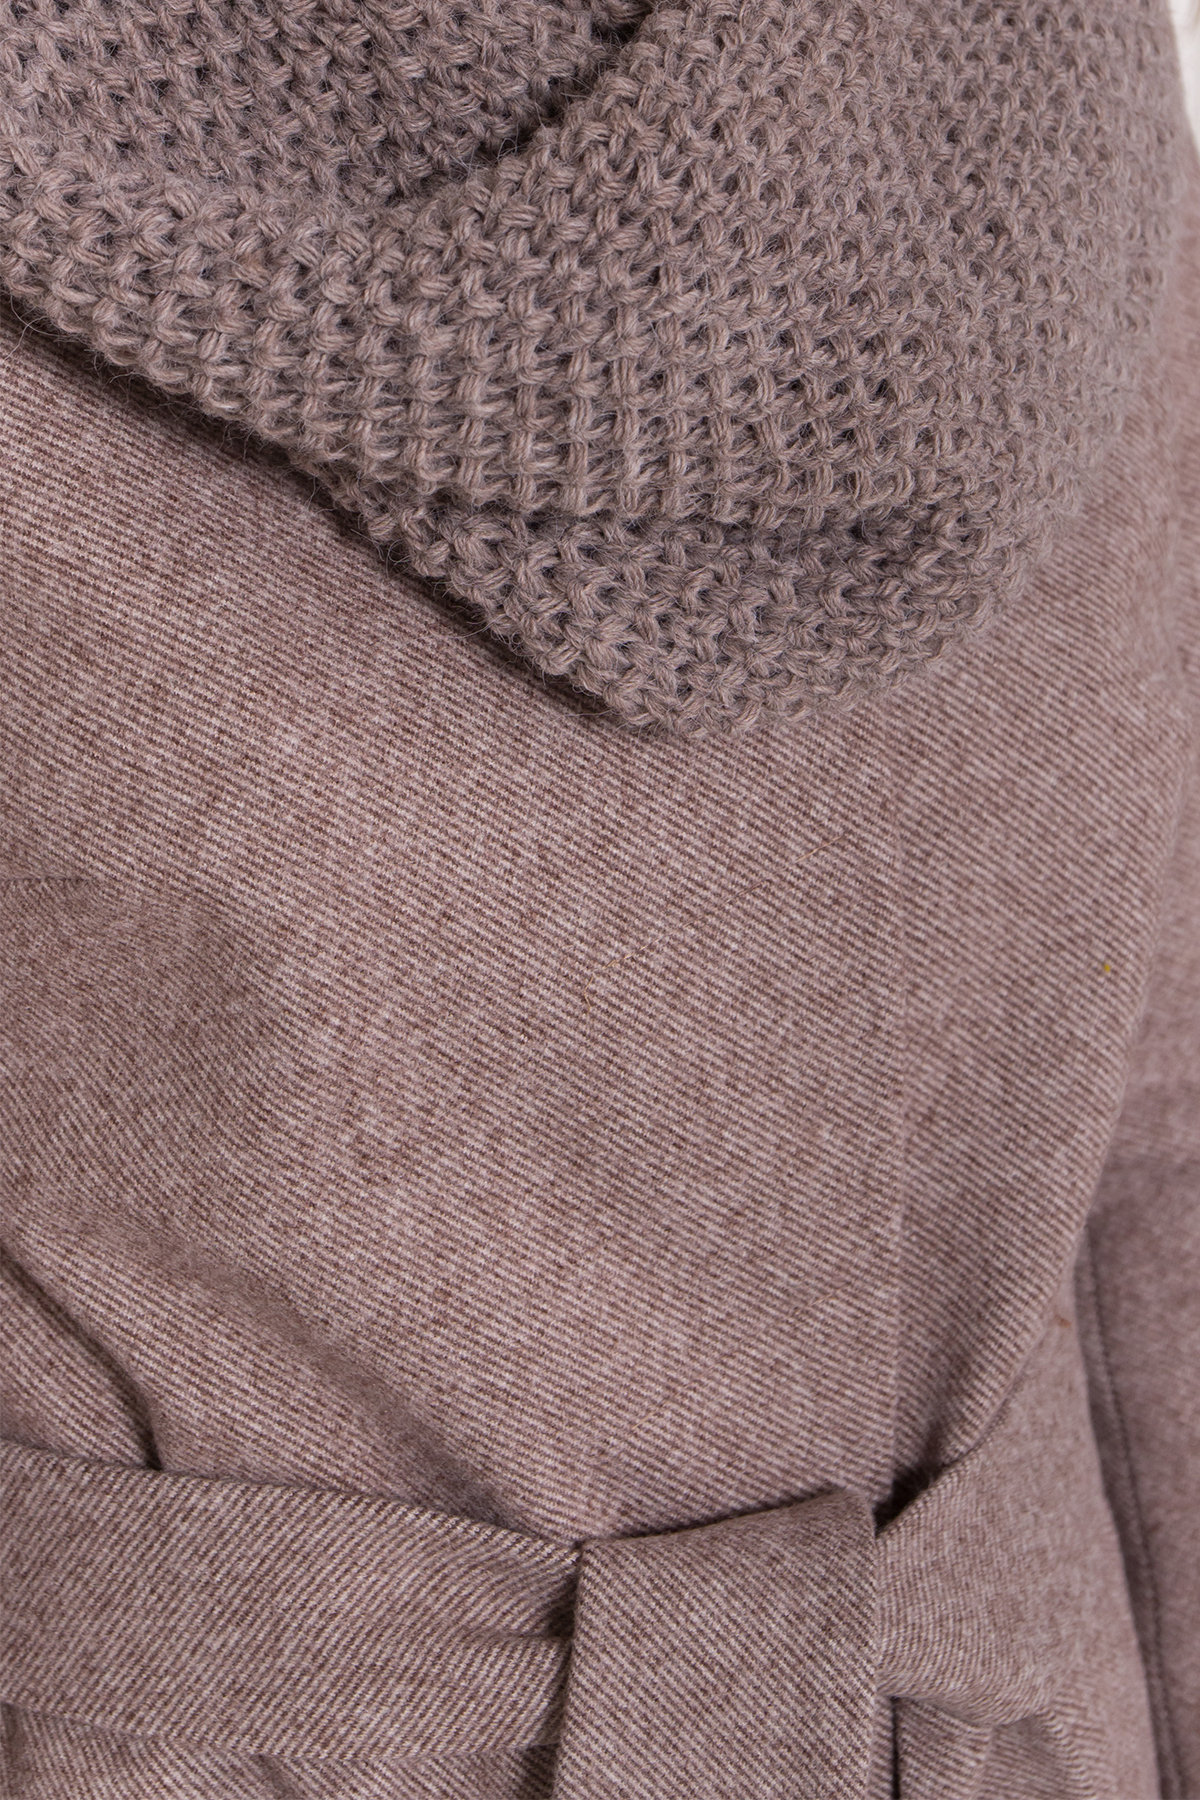 Зимнее пальто со снудом Габи 8205 АРТ. 44220 Цвет: Шоколадный меланж - фото 6, интернет магазин tm-modus.ru